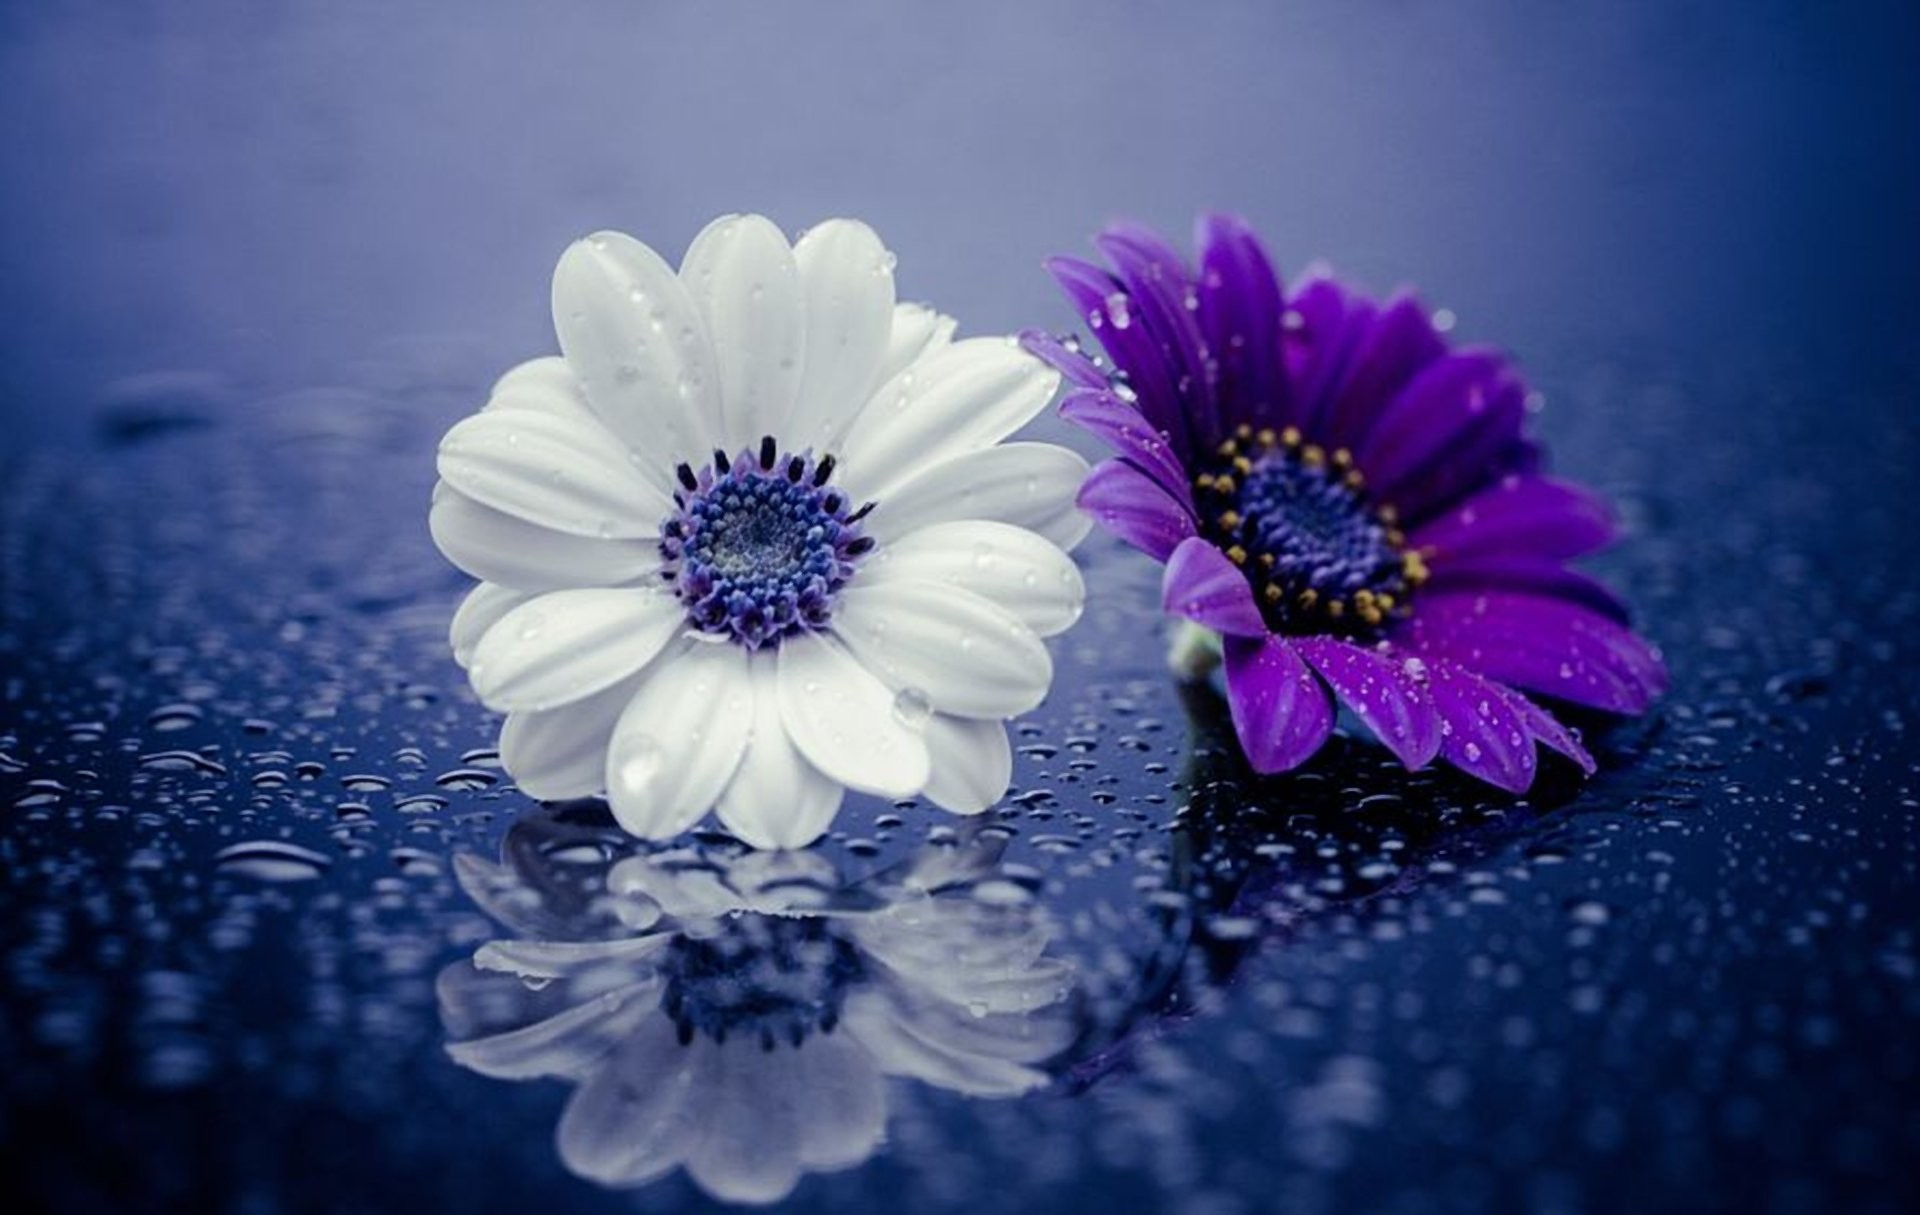 1920x1215 Earth - Daisy White Flower Flower Purple Flower Water Drop Close-Up  Wallpaper